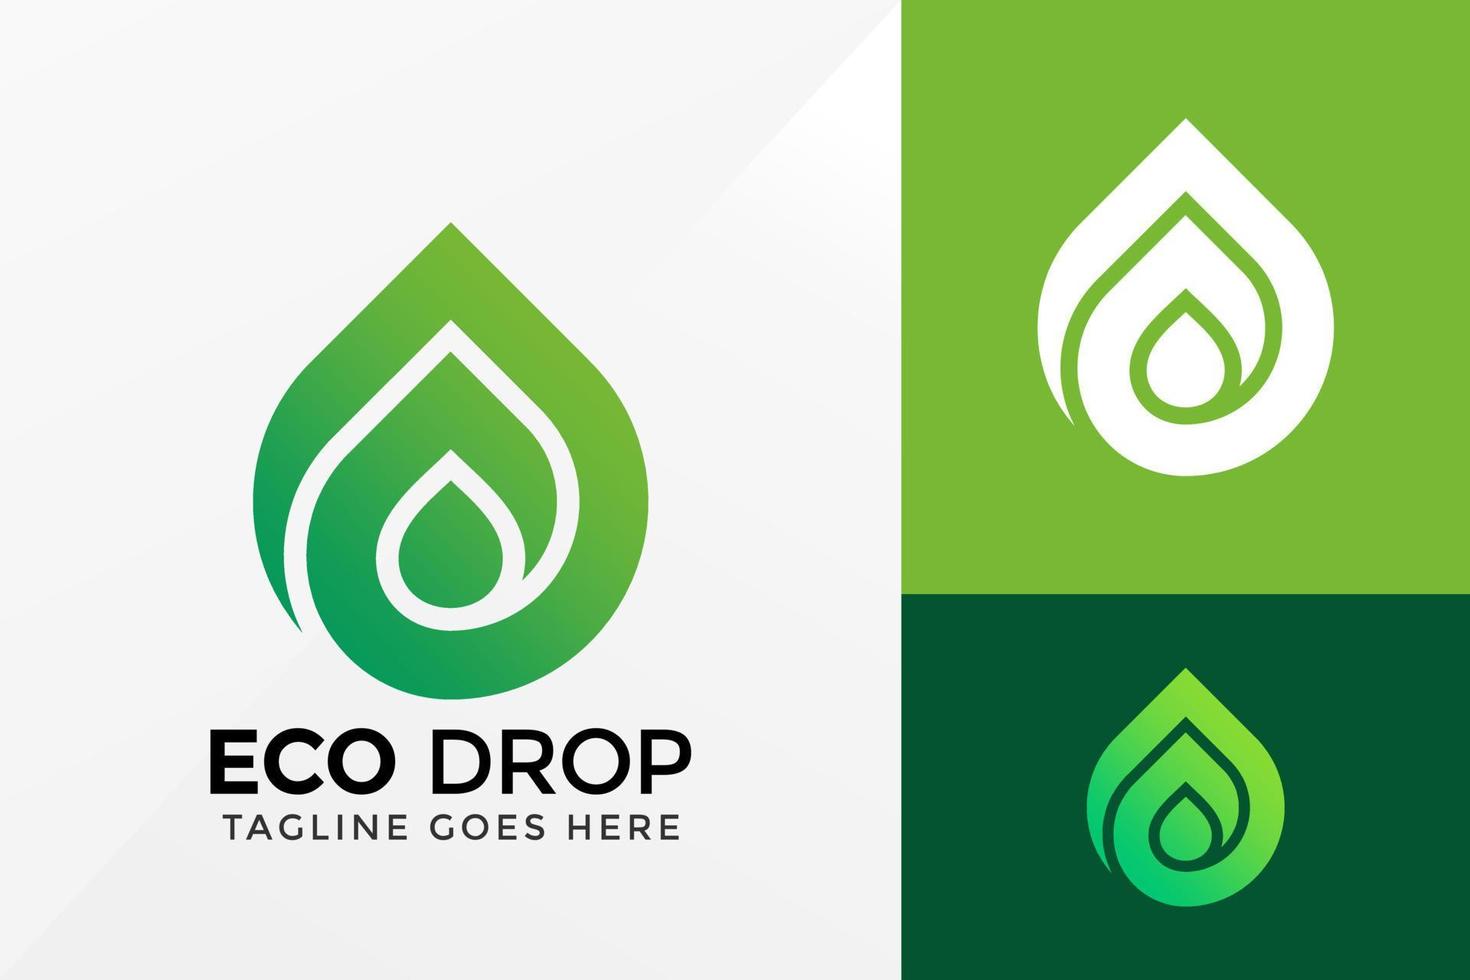 création de logo eco drop, image vectorielle de logos d'identité de marque, logo moderne, modèle d'illustration vectorielle de conceptions de logo vecteur